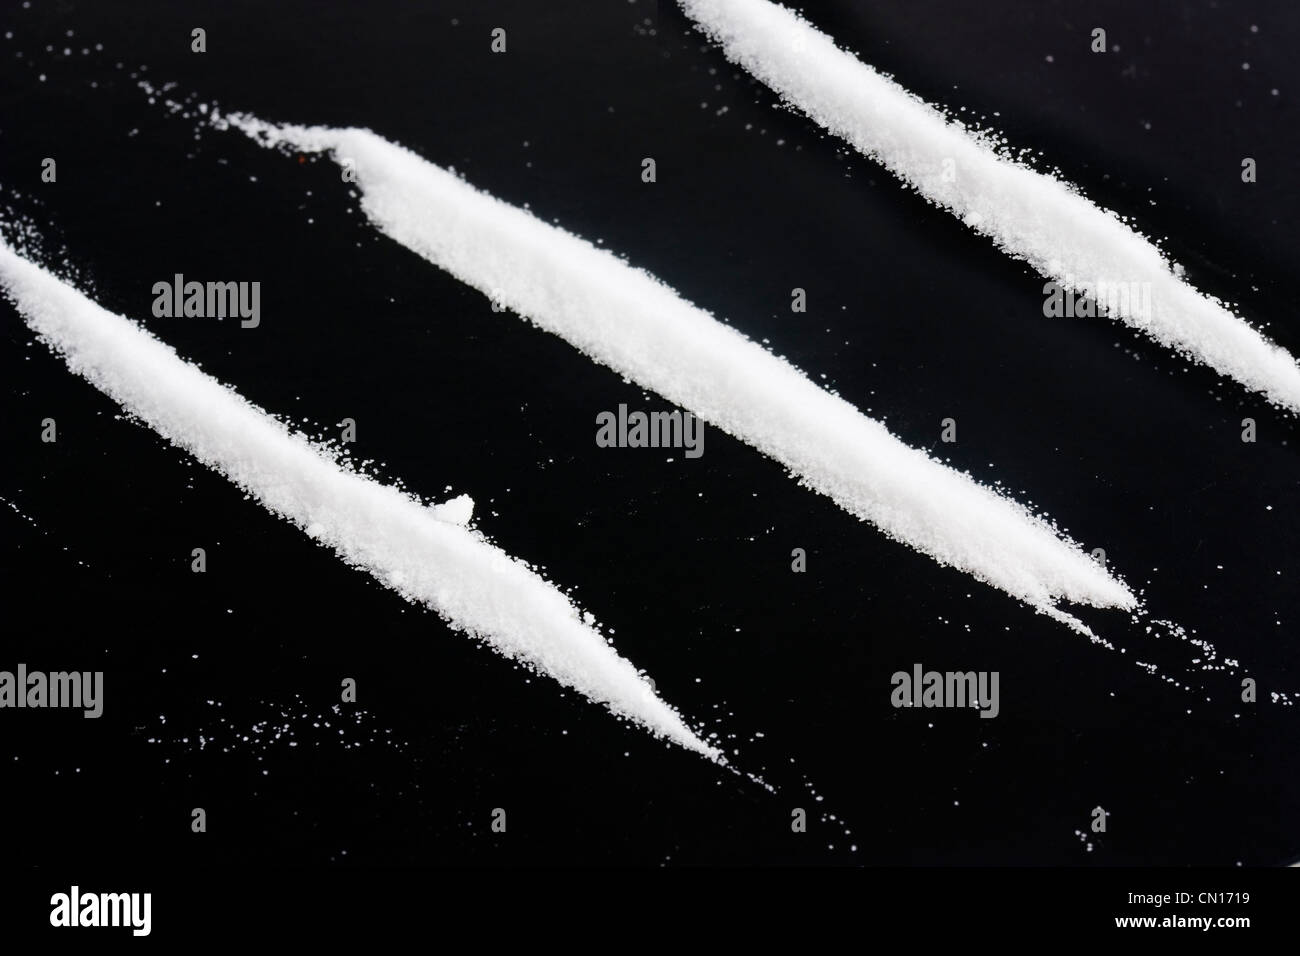 Hintergrundfoto von einige Drogen-Streifen Stockfoto